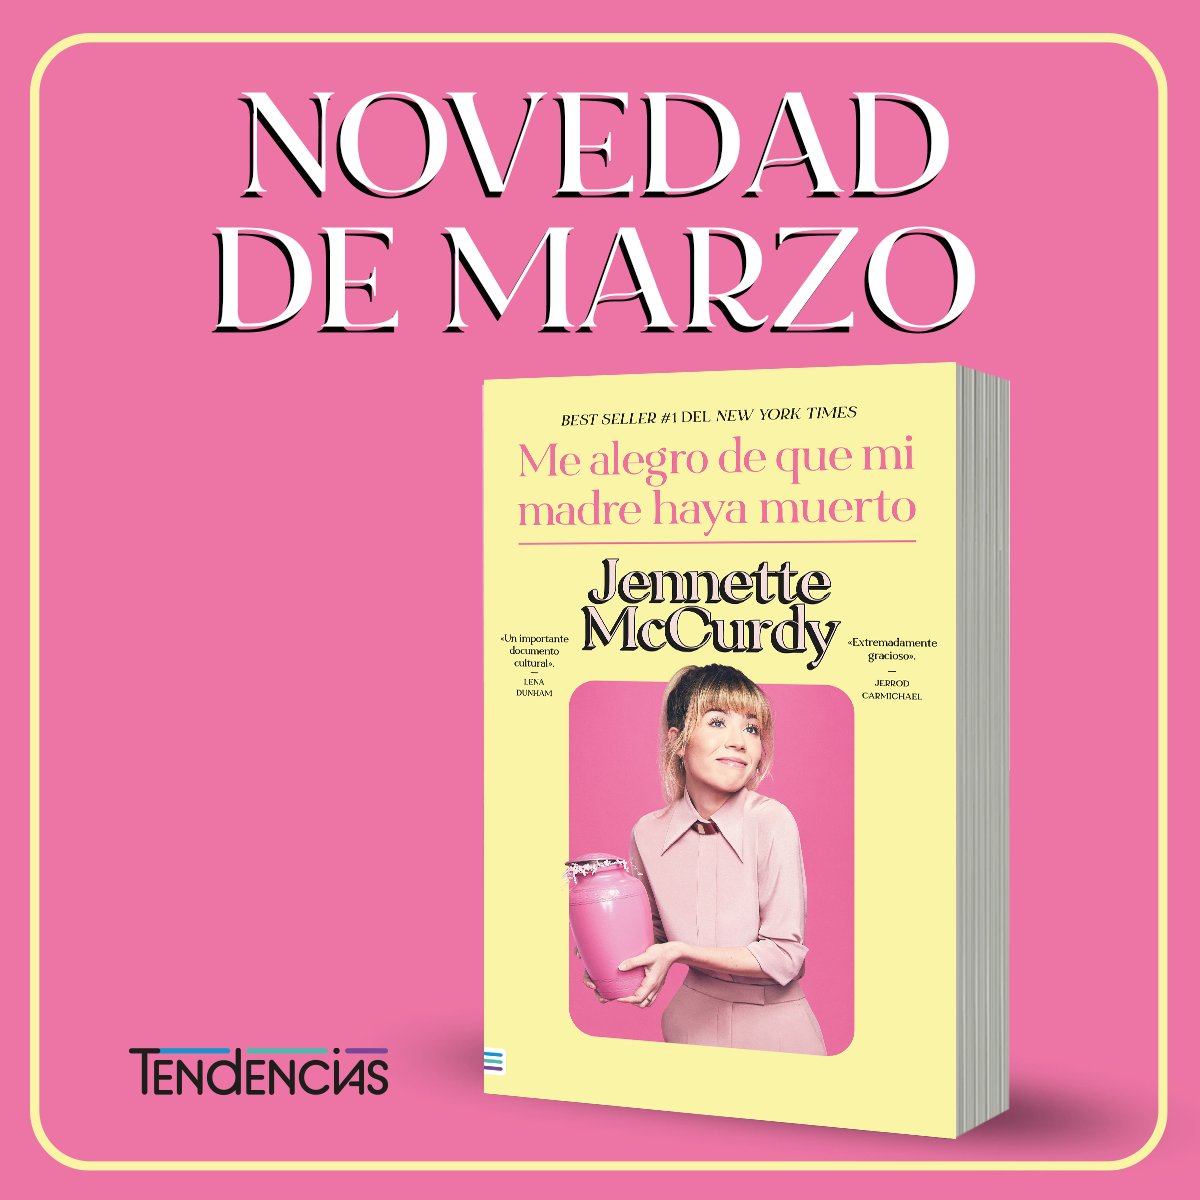 NOVEDAD DE MARZO. #MeAlegrodequemiMadrehayaMuerto de @jennettemccurdy llegará a todas las librerías chilenas muy pronto. ¿Están listos? 
#bookstagram #libros #novedad